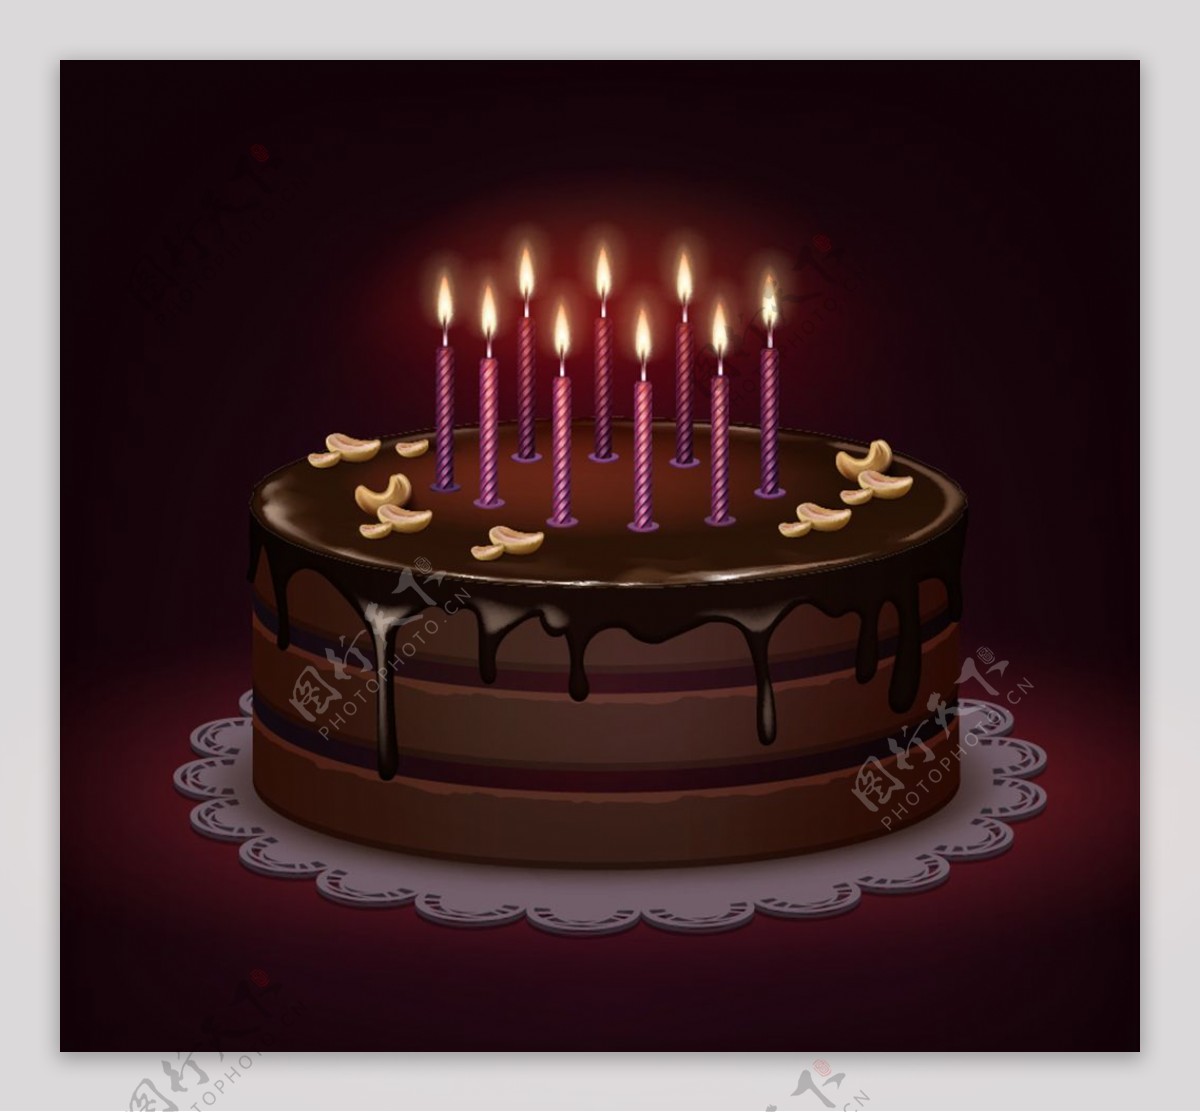 巧克力生日蛋糕上燃烧的蜡烛